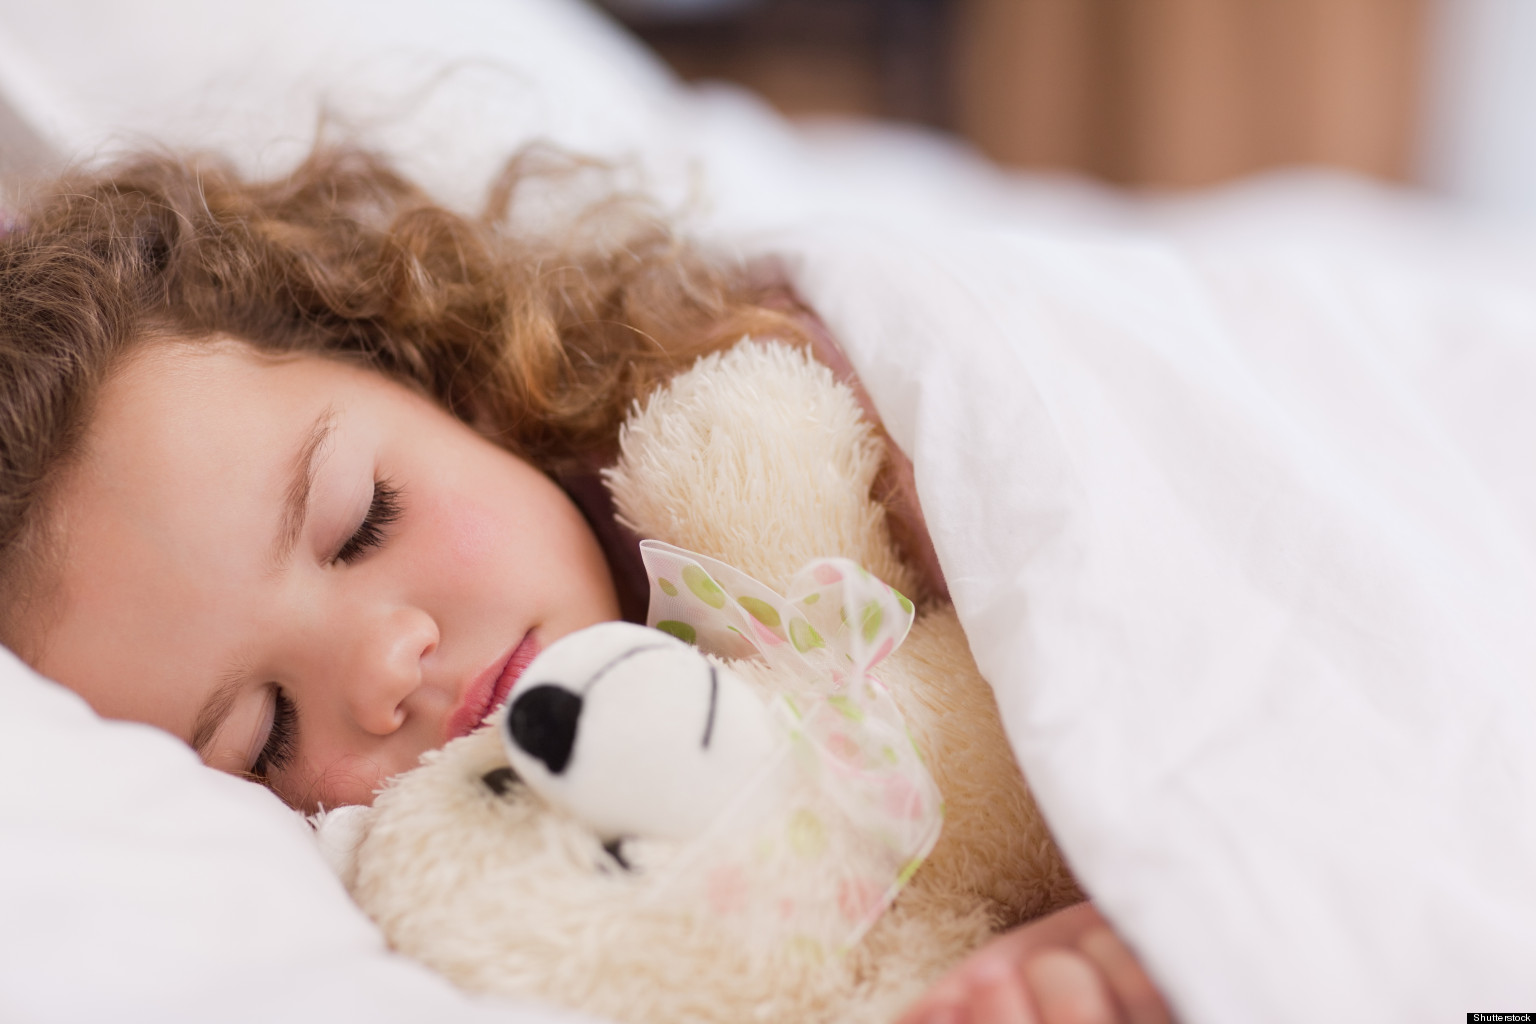 Είναι απαραίτητος ο μεσημεριανός ύπνος για τα παιδιά;